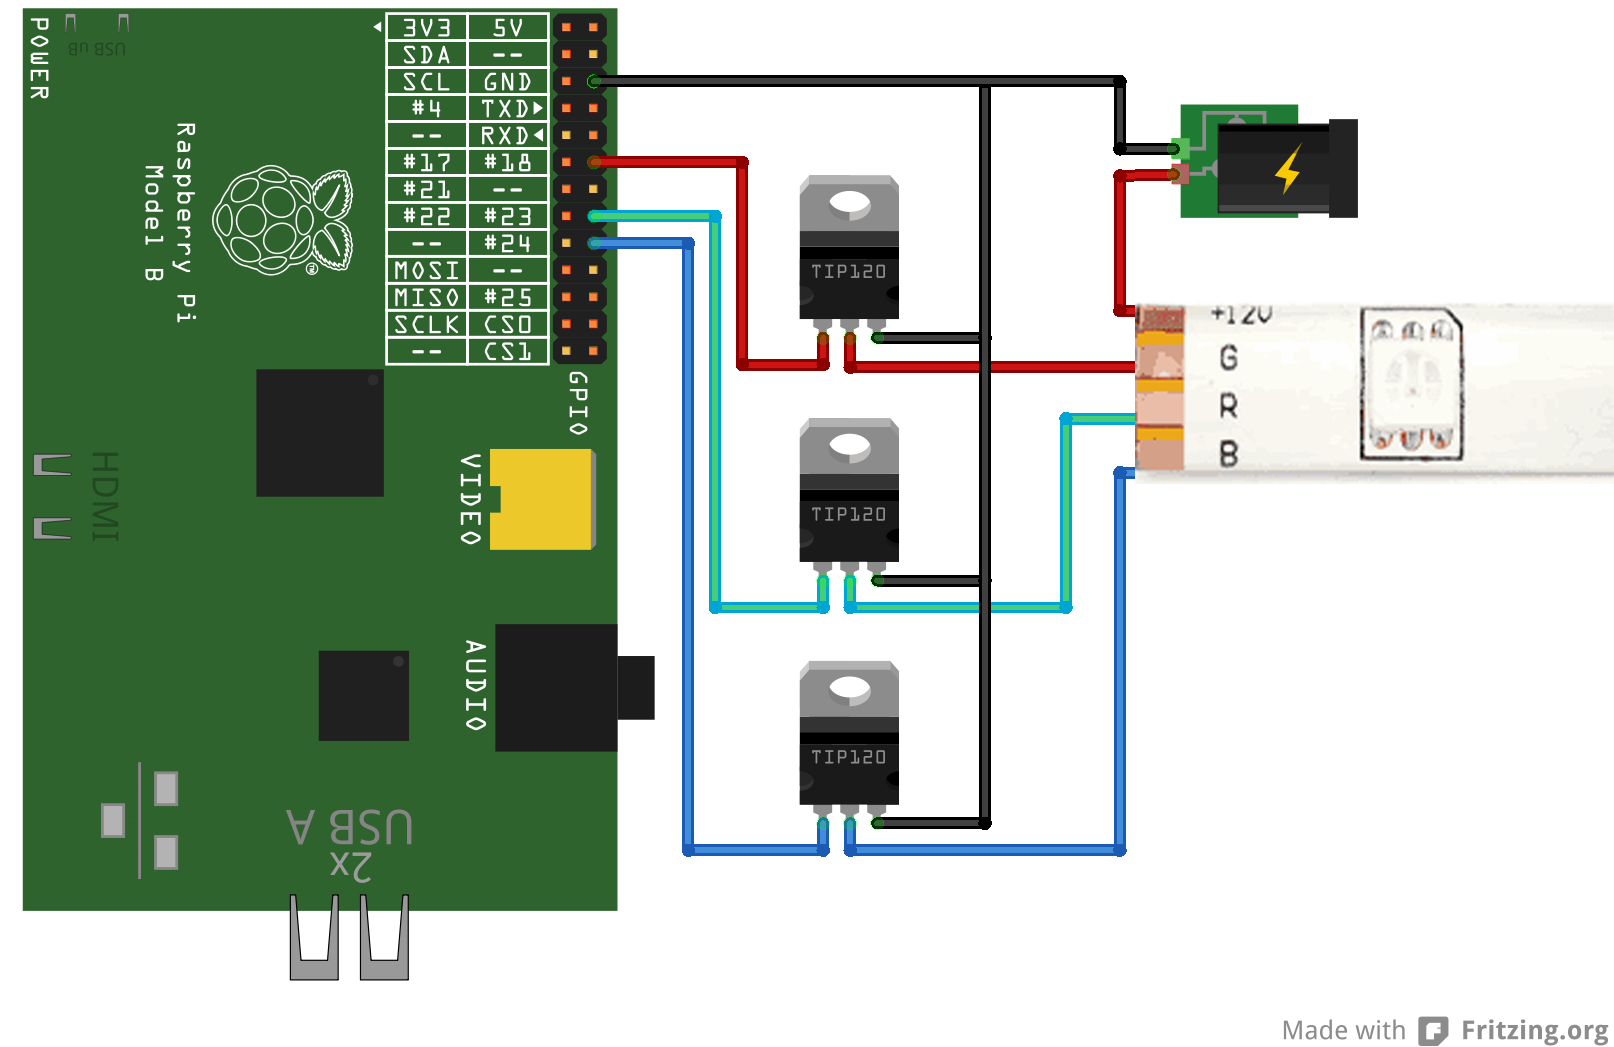 Ардуино 5 вольт. Ардуино светодиодная лента РГБ 12. RGB контроллер на ардуино. Схема подключения RGB ленты к ардуино. Arduino схема включения RGB ленты.